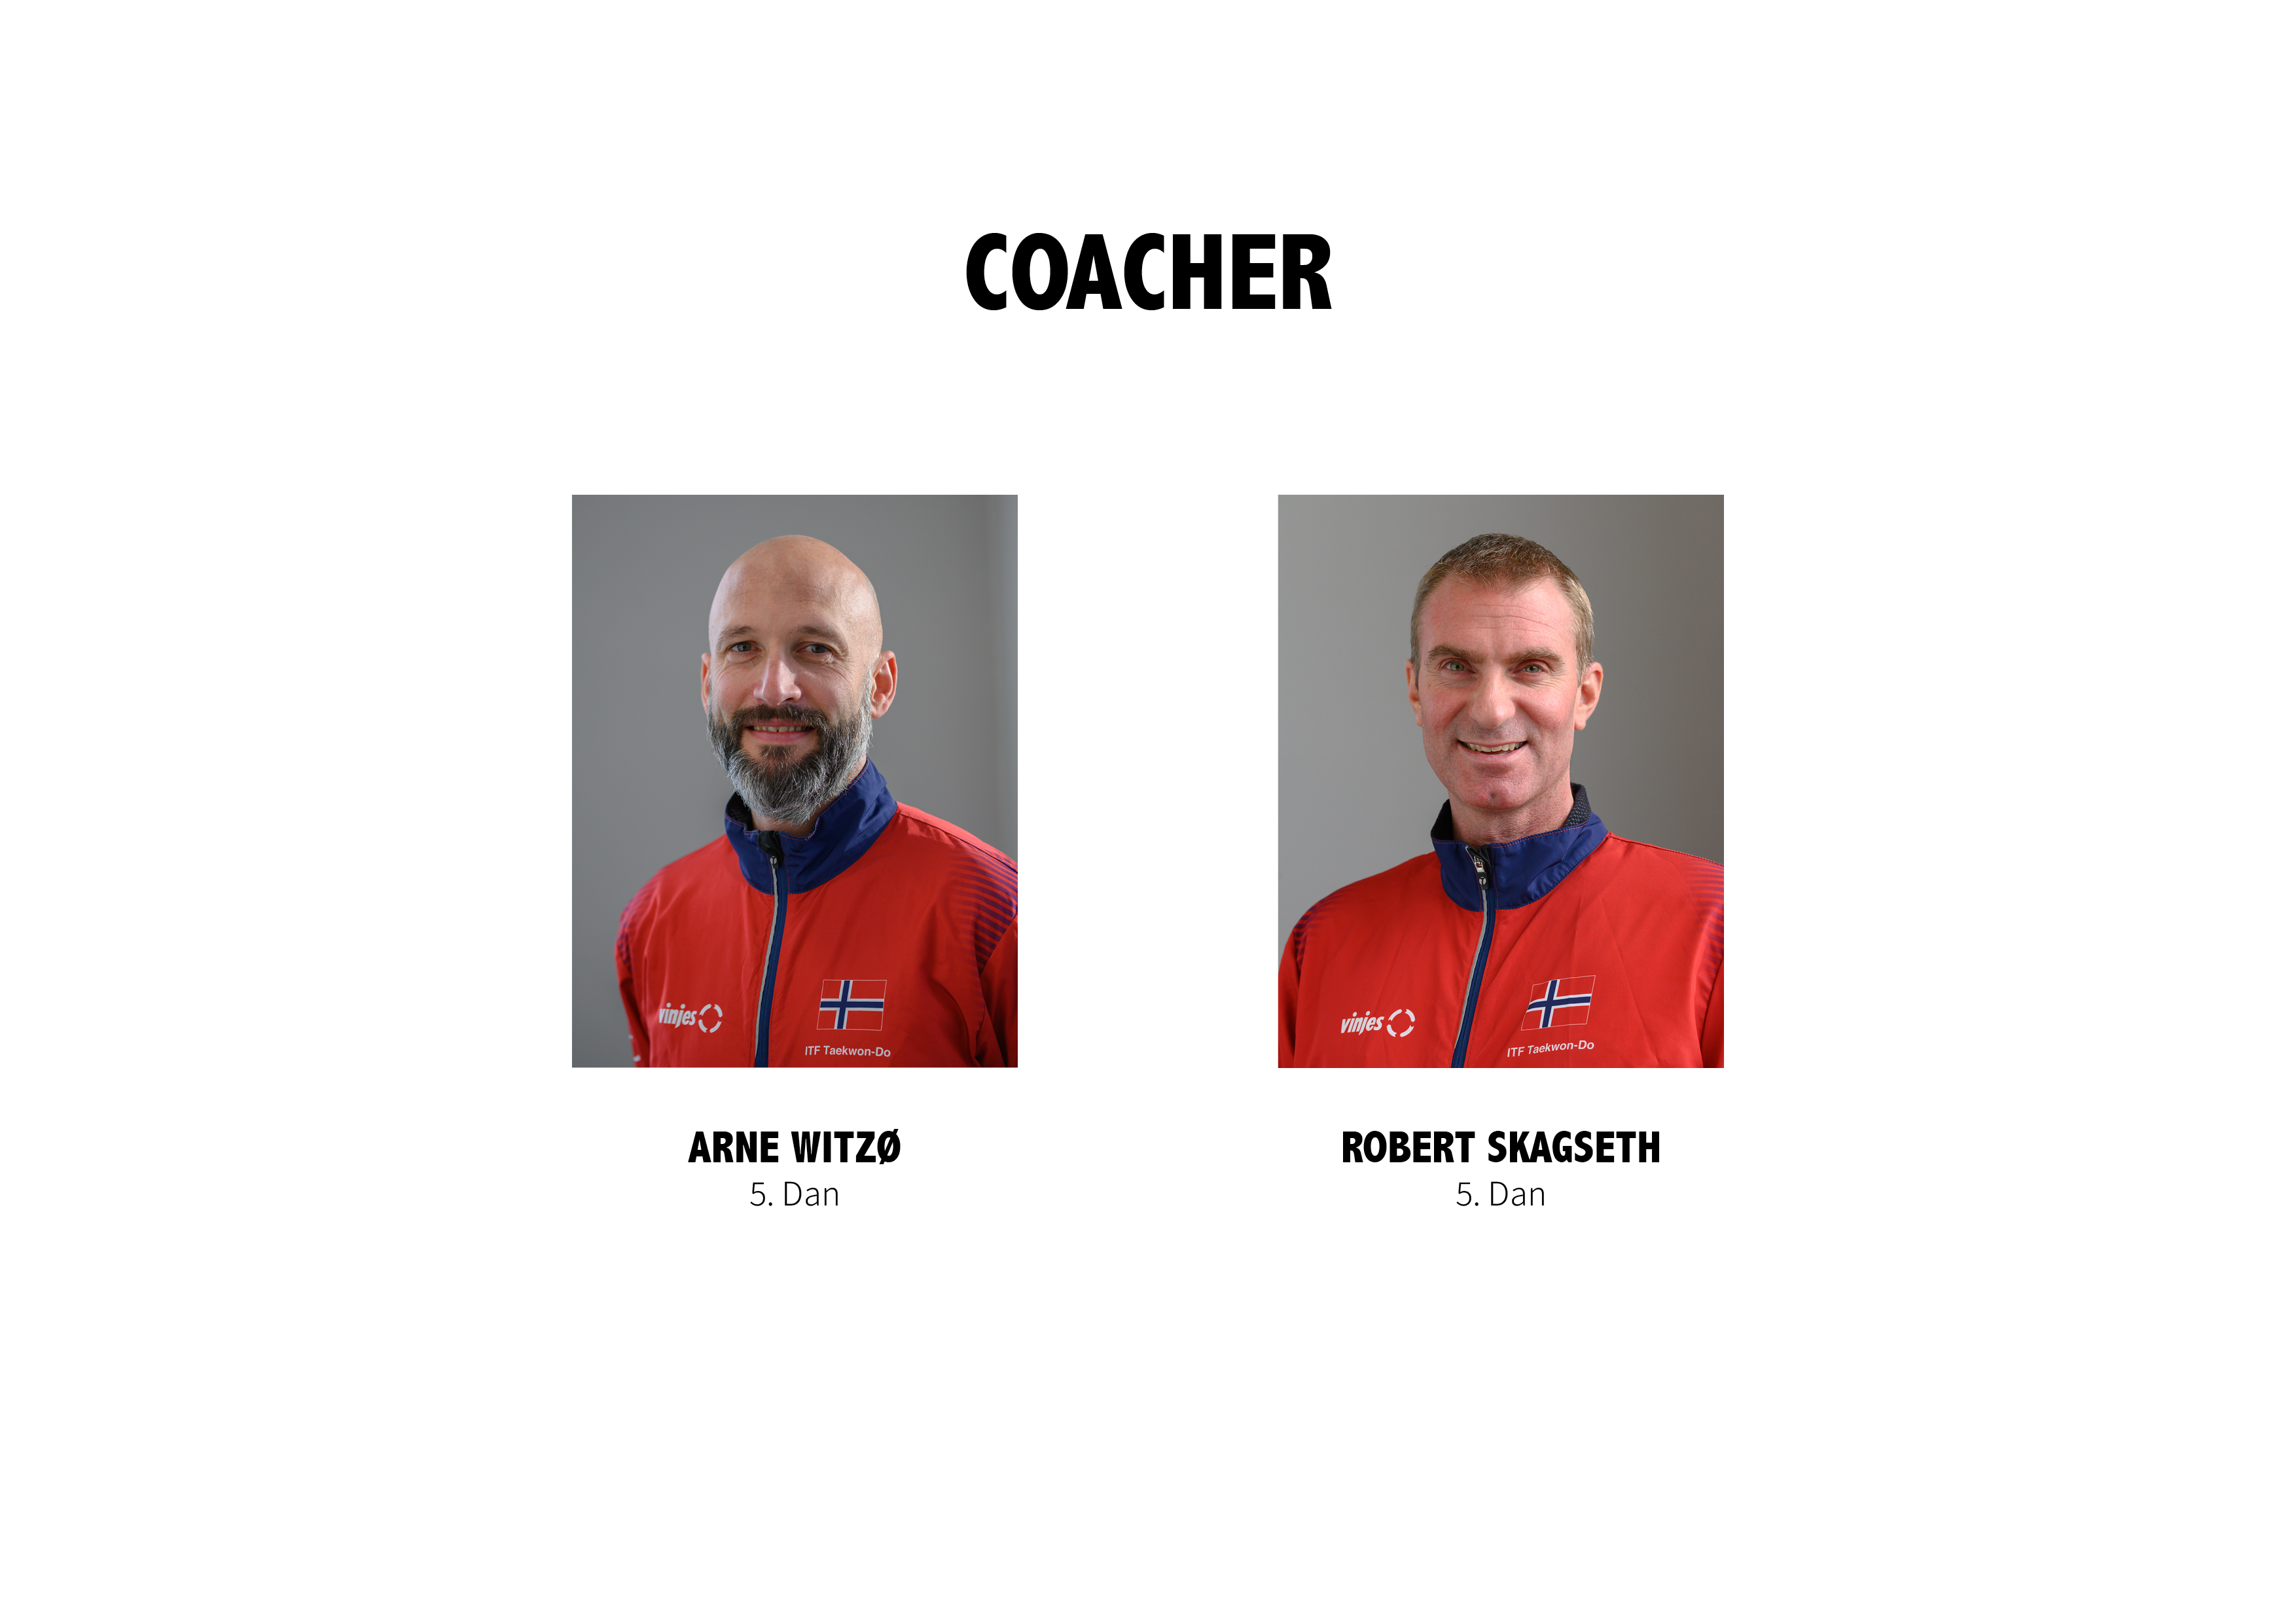 Coacher